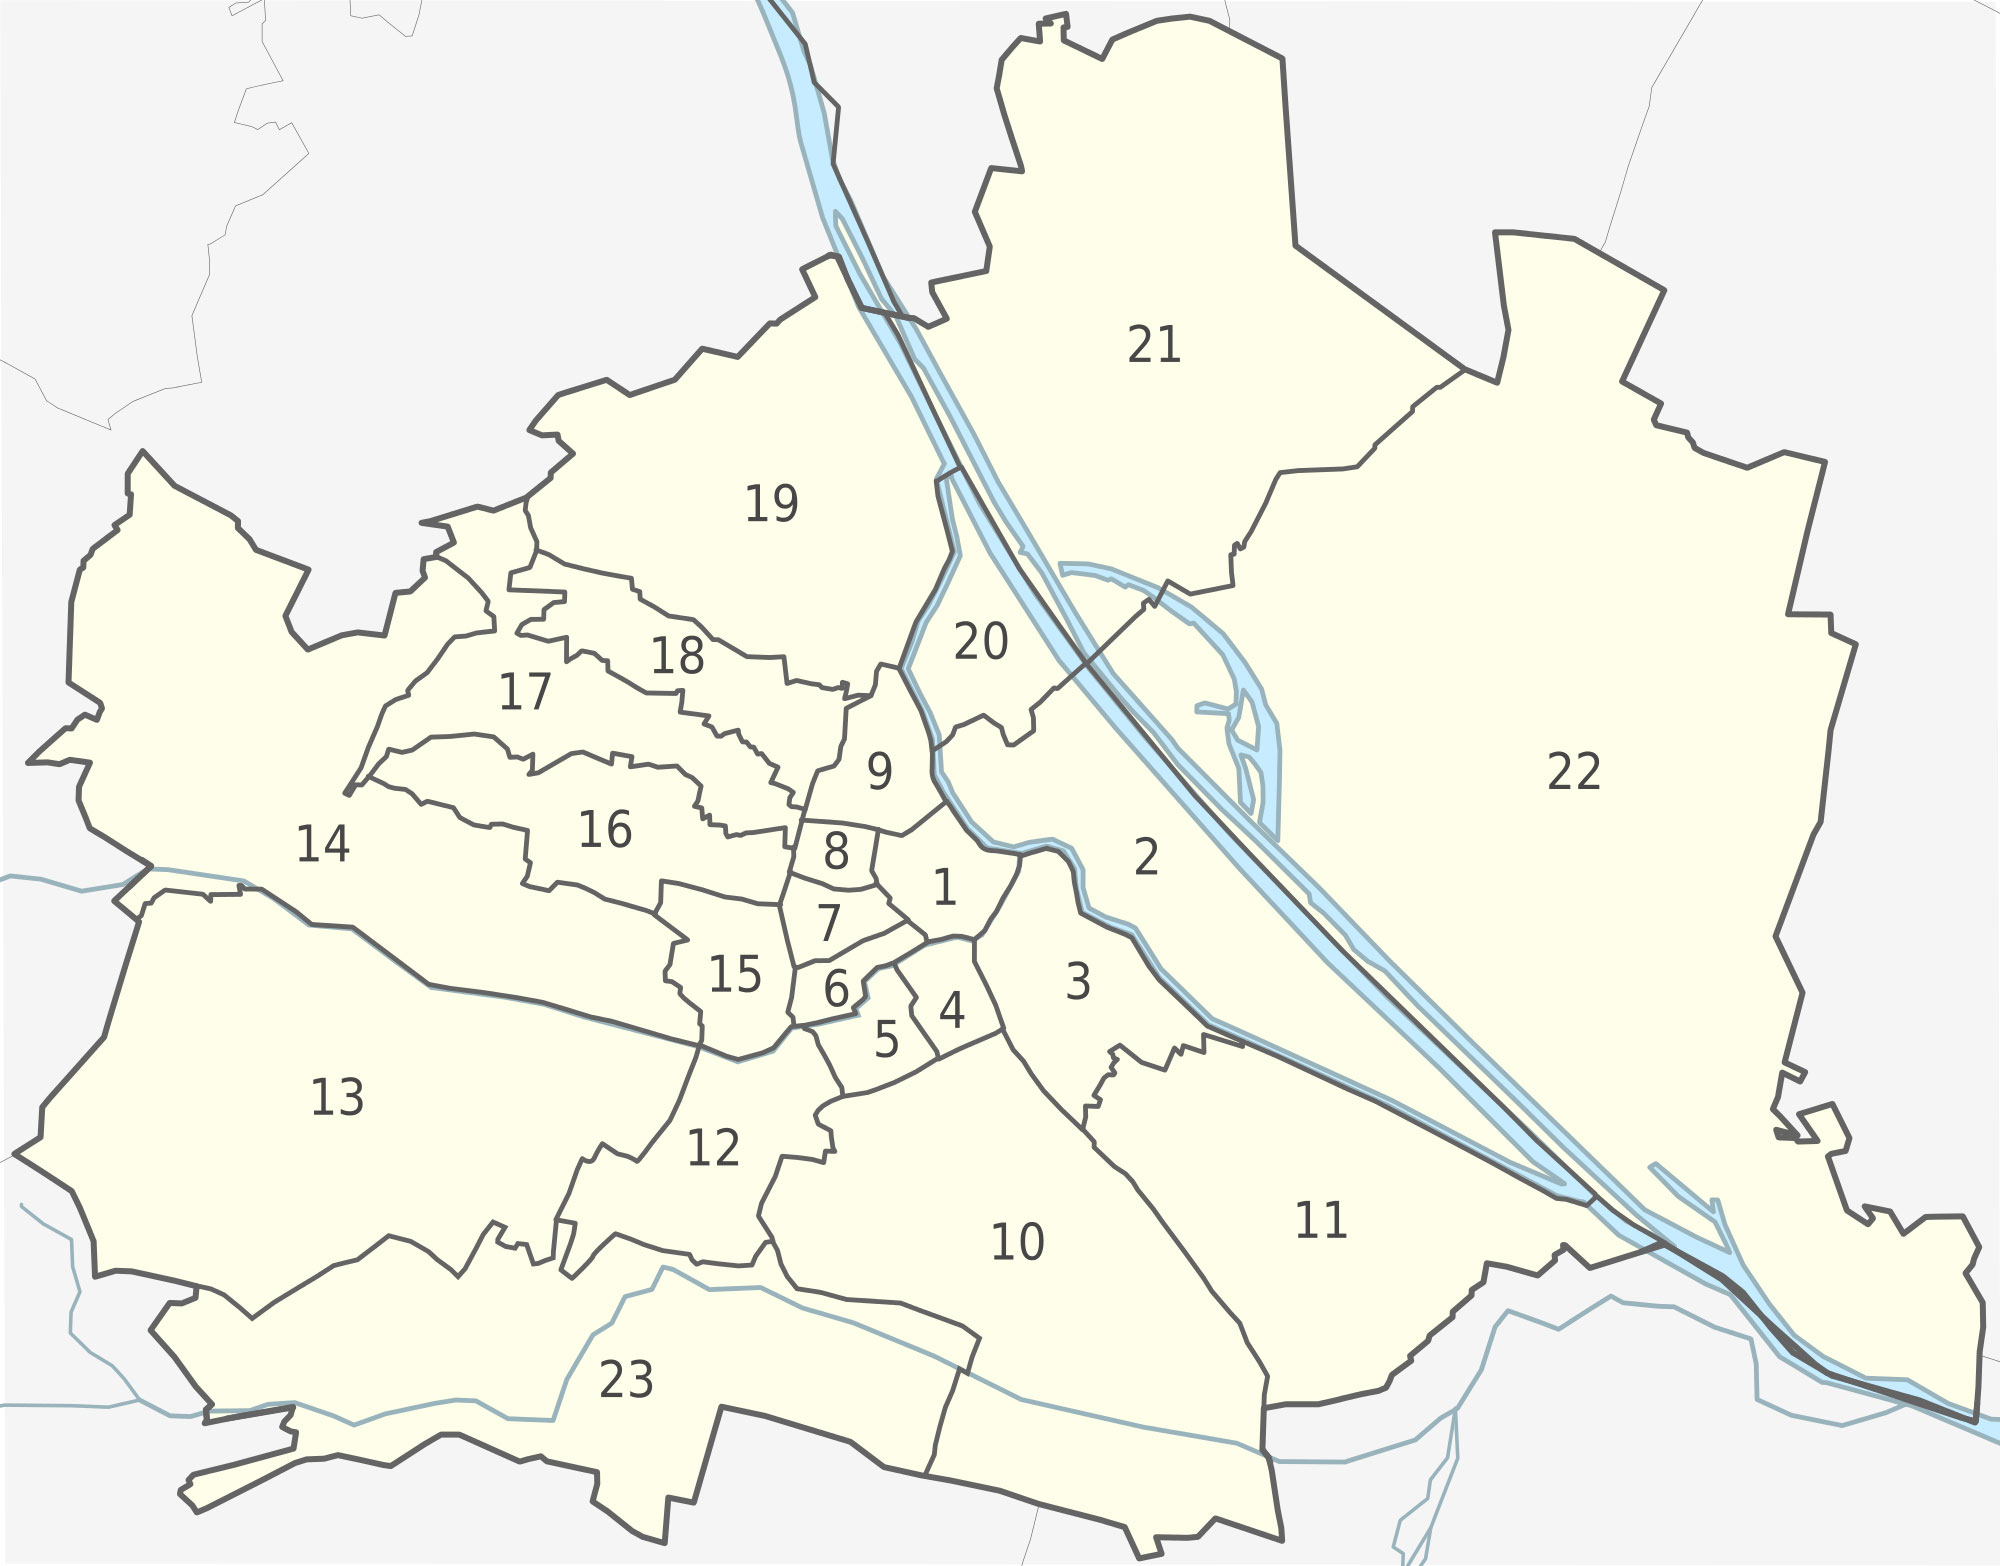 Stadtplan Wien Bezirke Karte | creactie